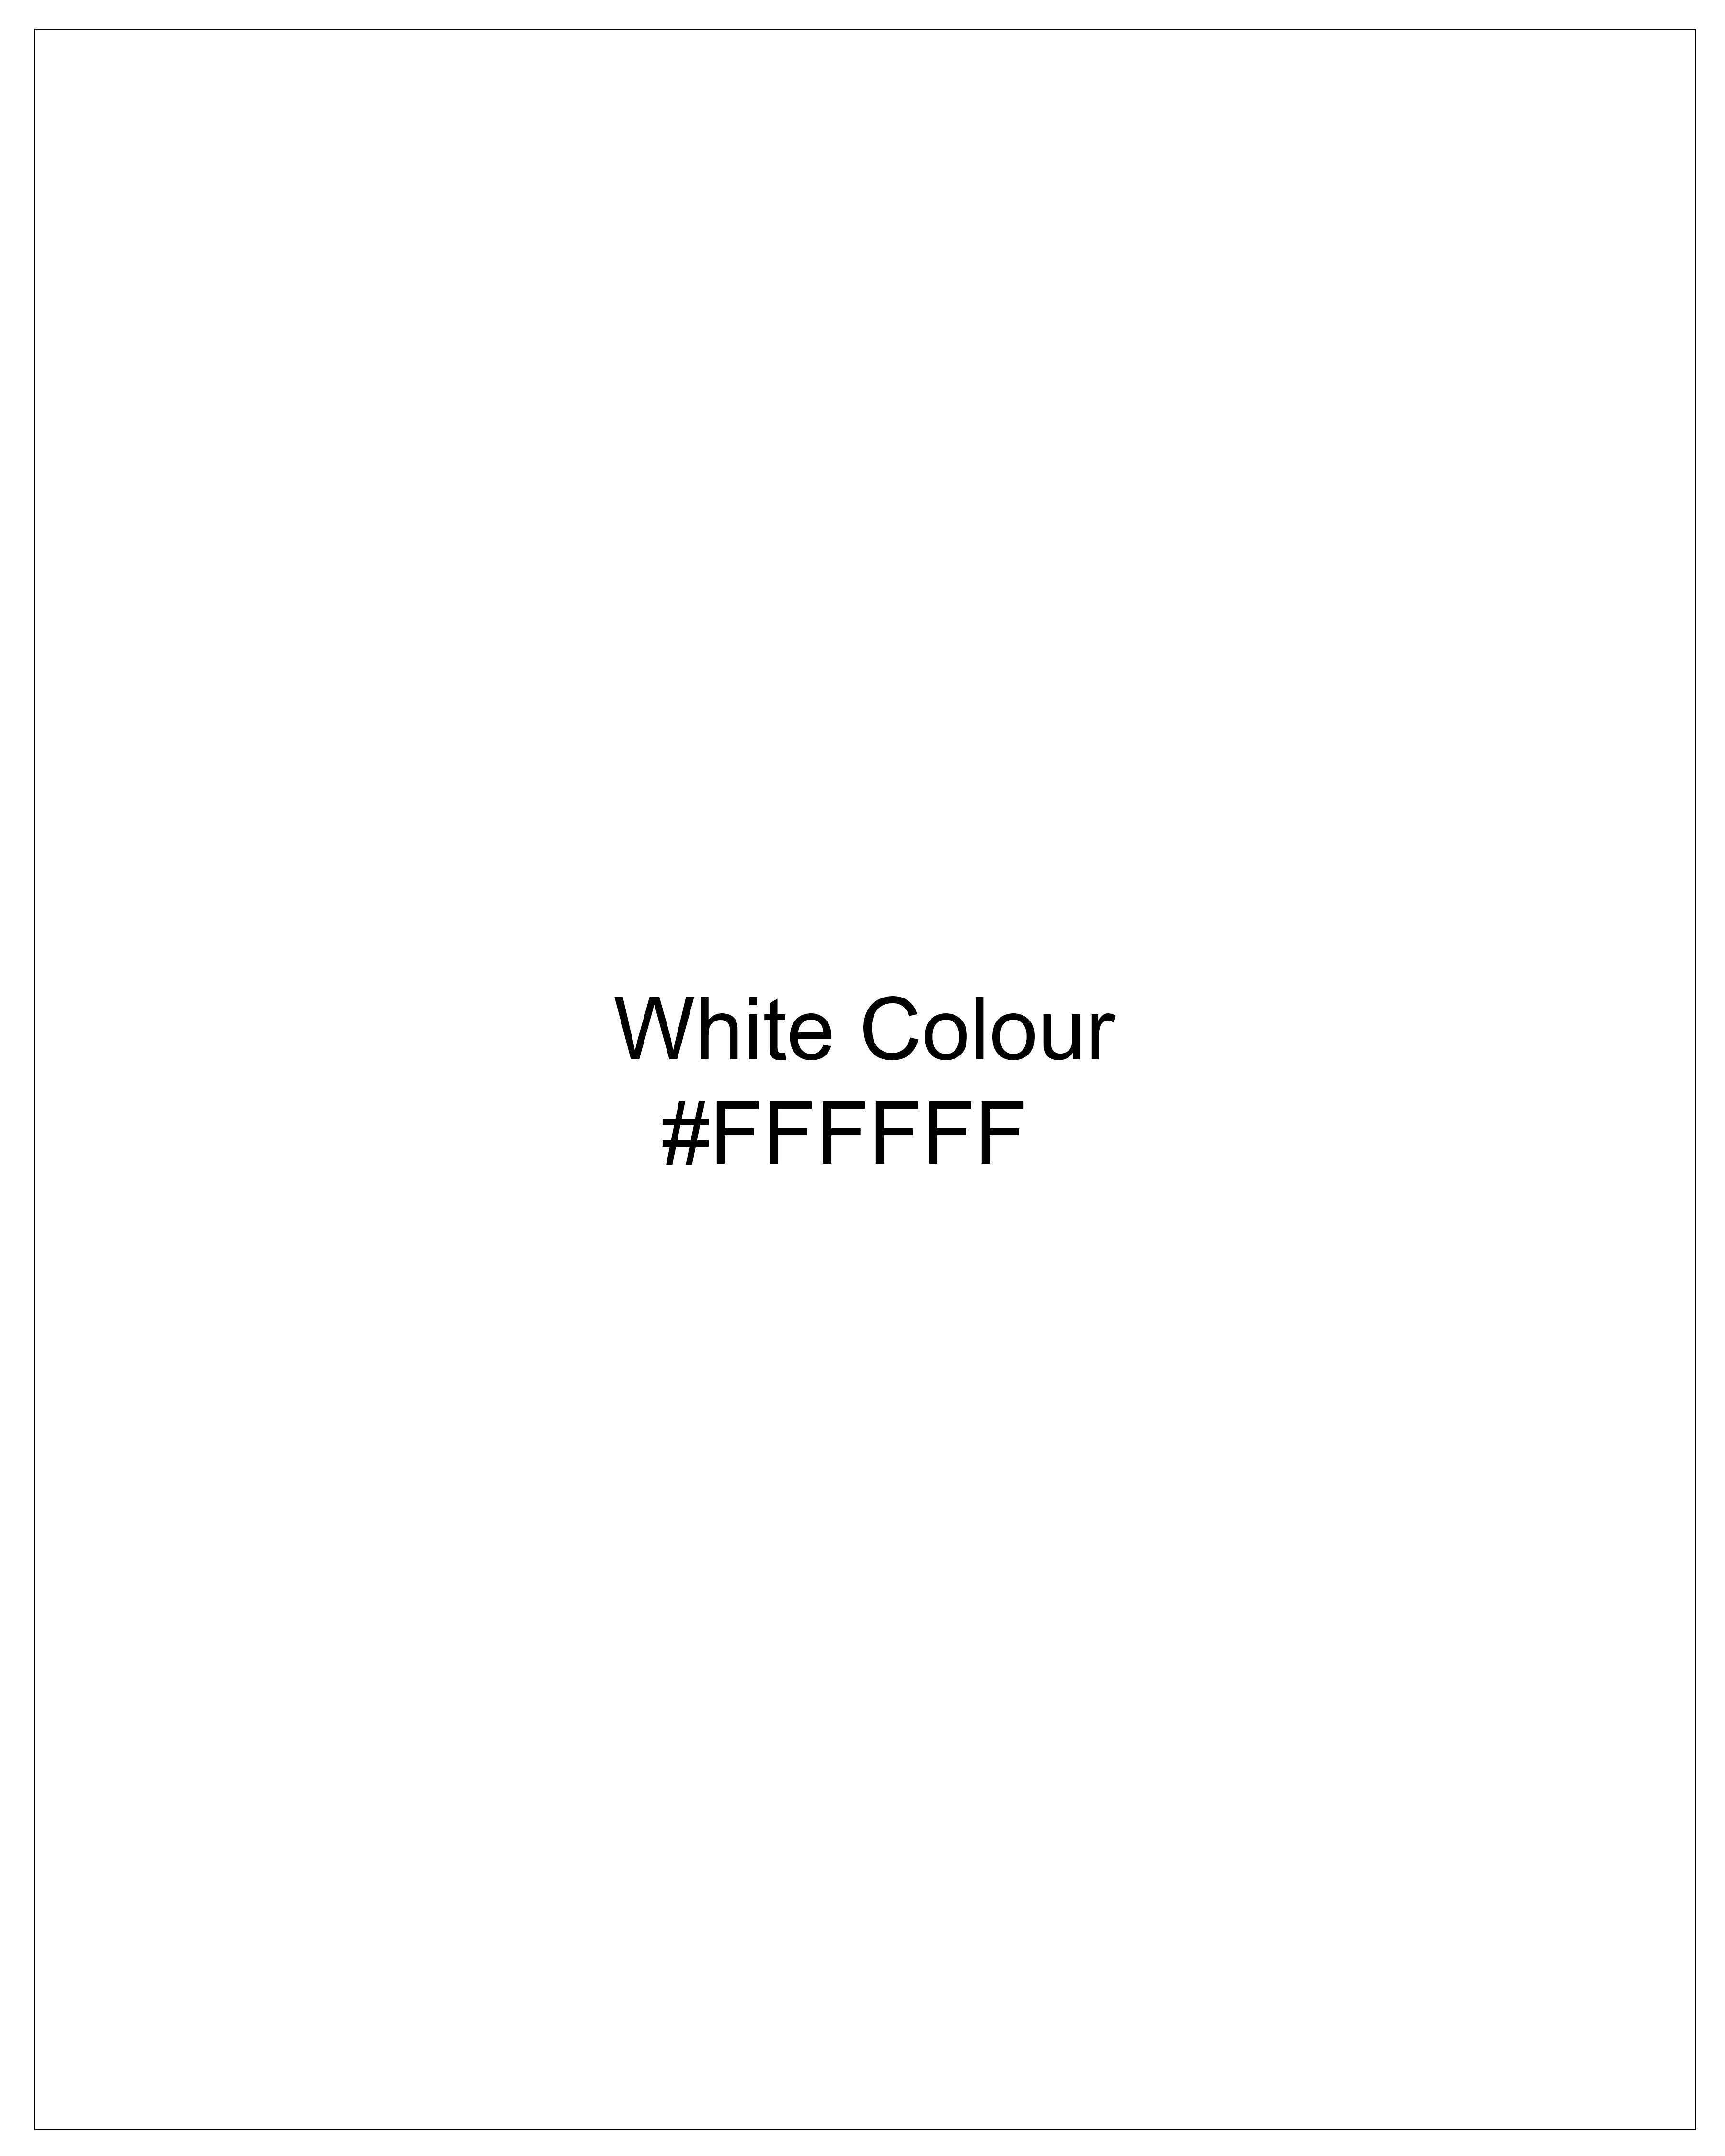 Bright White Dobby Textured Premium Giza Cotton Shirt 8994-BLE-38, 8994-BLE-H-38, 8994-BLE-39, 8994-BLE-H-39, 8994-BLE-40, 8994-BLE-H-40, 8994-BLE-42, 8994-BLE-H-42, 8994-BLE-44, 8994-BLE-H-44, 8994-BLE-46, 8994-BLE-H-46, 8994-BLE-48, 8994-BLE-H-48, 8994-BLE-50, 8994-BLE-H-50, 8994-BLE-52, 8994-BLE-H-52